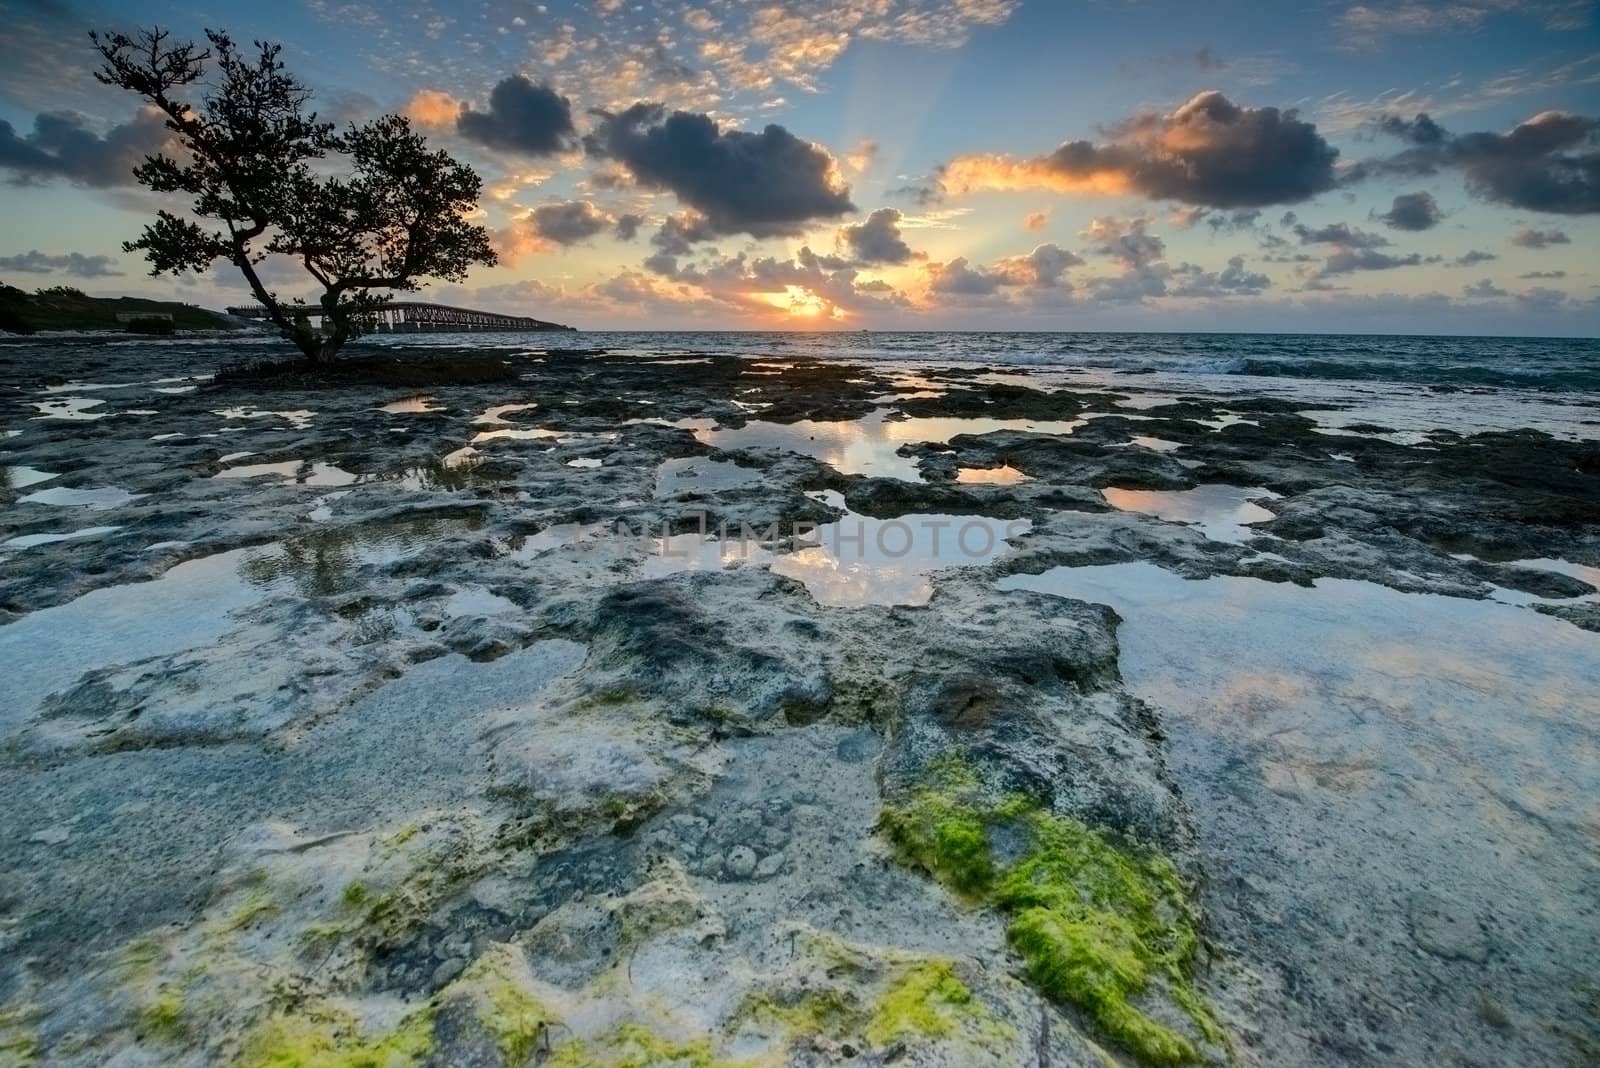 Florida Keys sunrise by liseykina